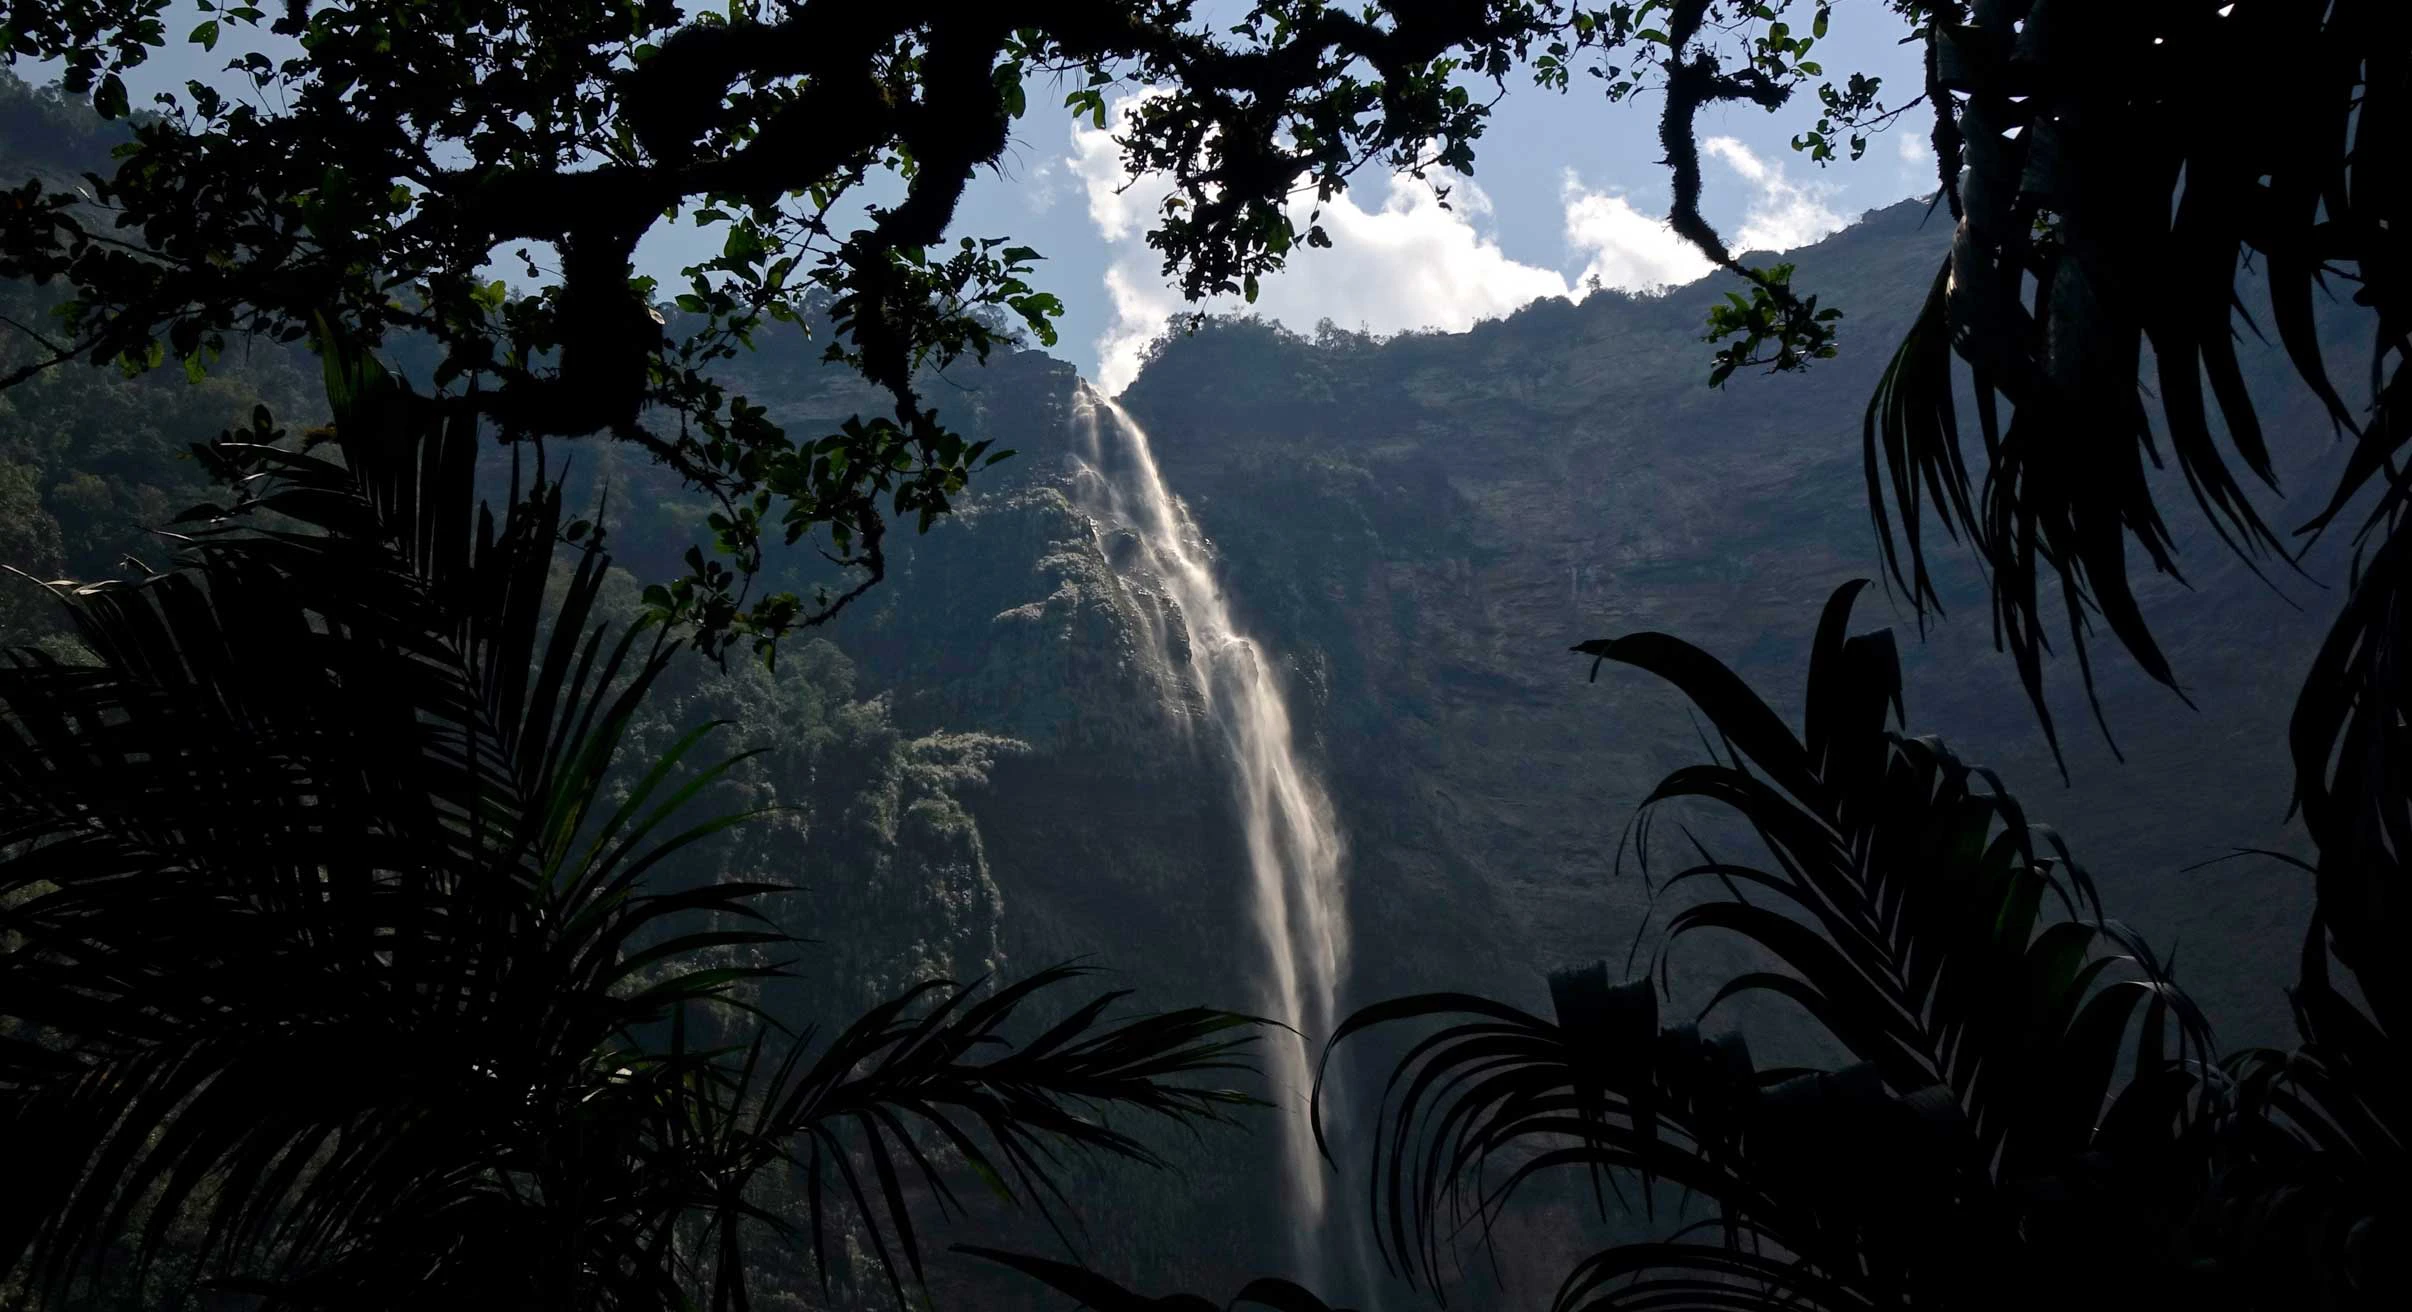 Gotca Falls in Peru